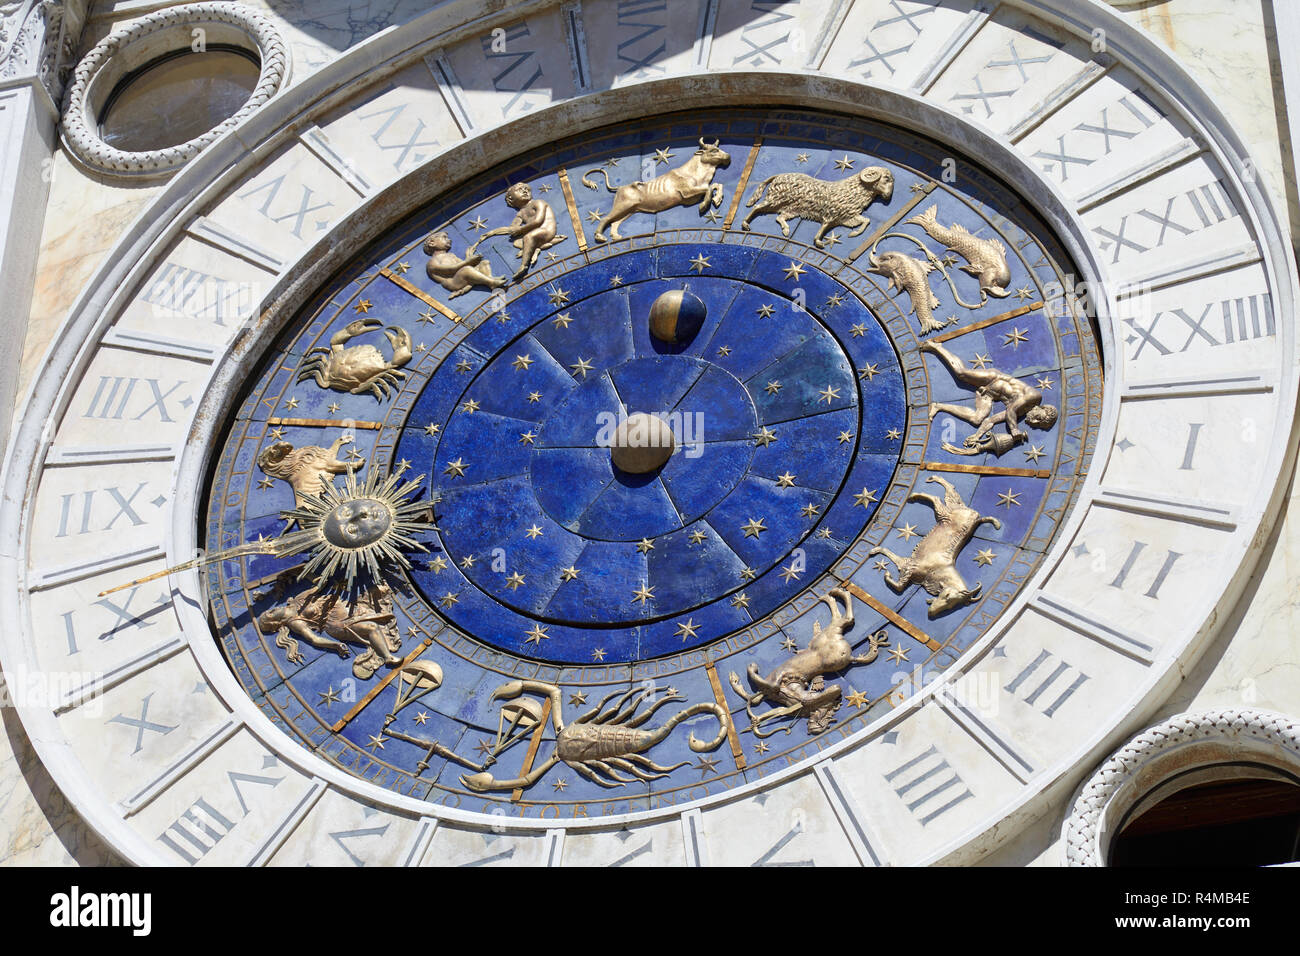 Astrologische Uhr mit gold Sternzeichen an einem sonnigen Tag Stockfoto